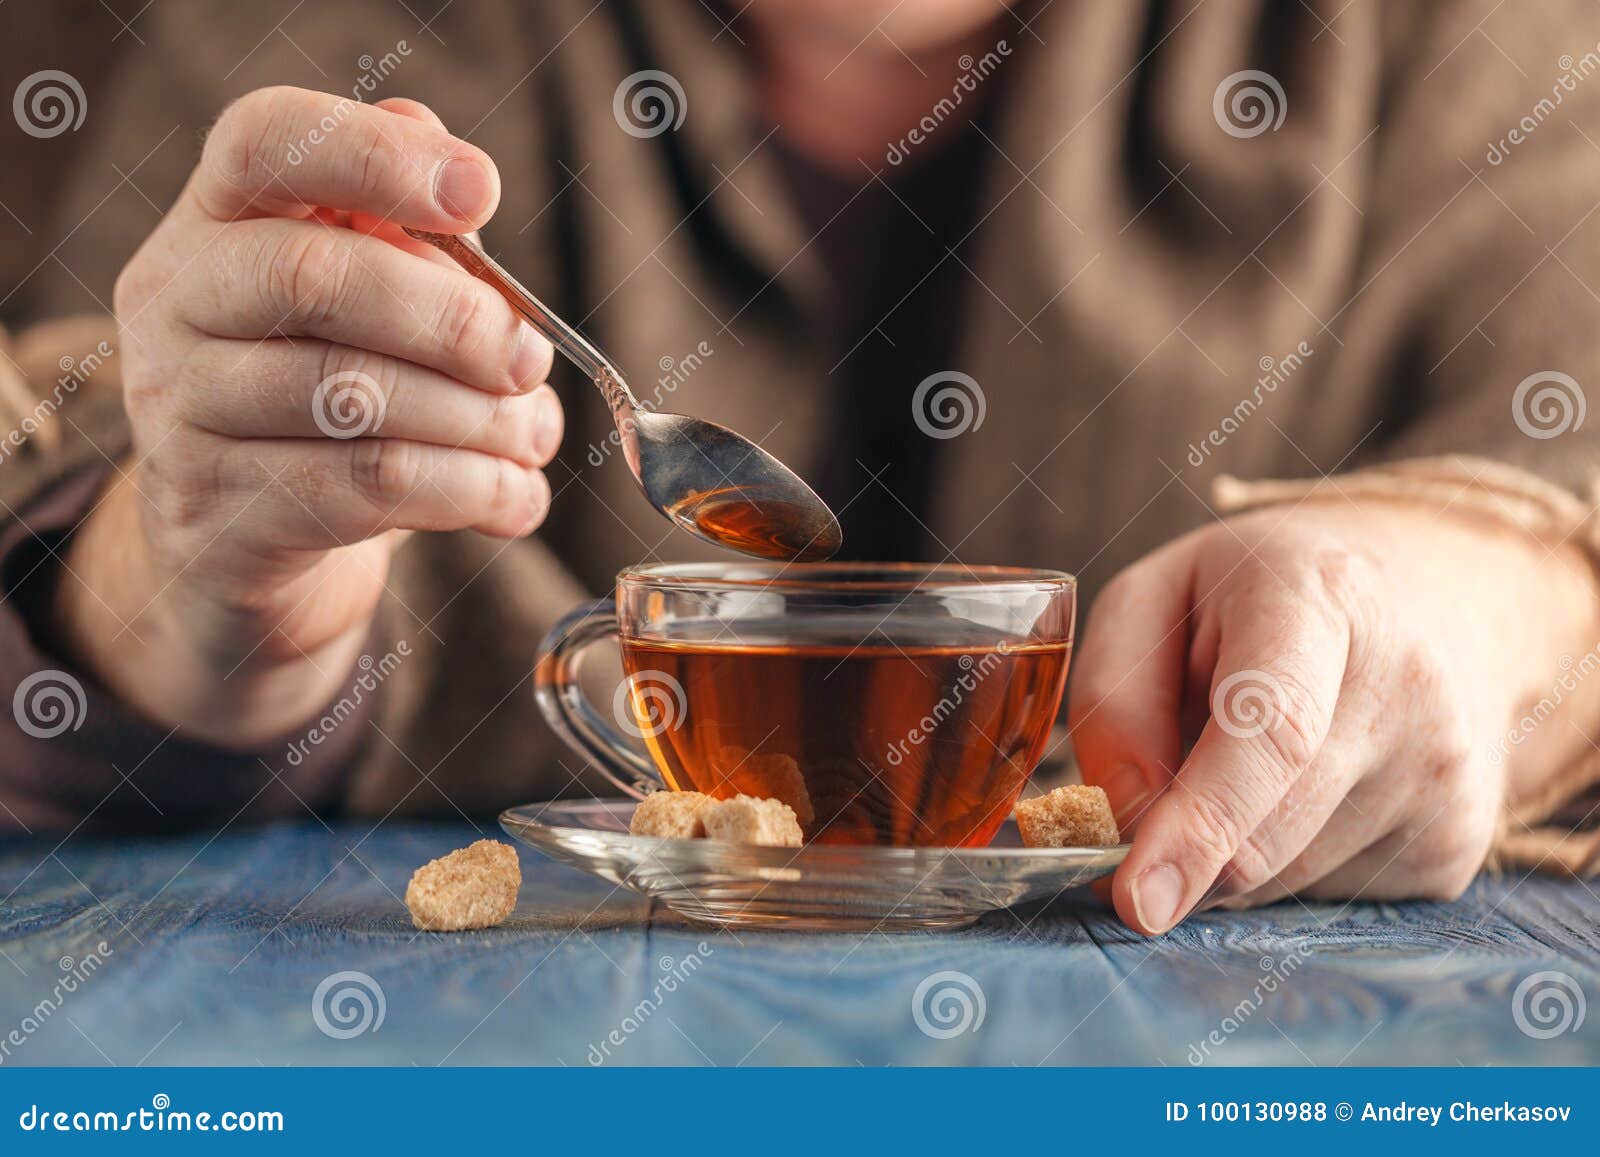 Пью чай с ложкой в кружке. Чайная ложка в руке. Ложка с чаем. Чай с ложкой. Размешивать чай ложкой.